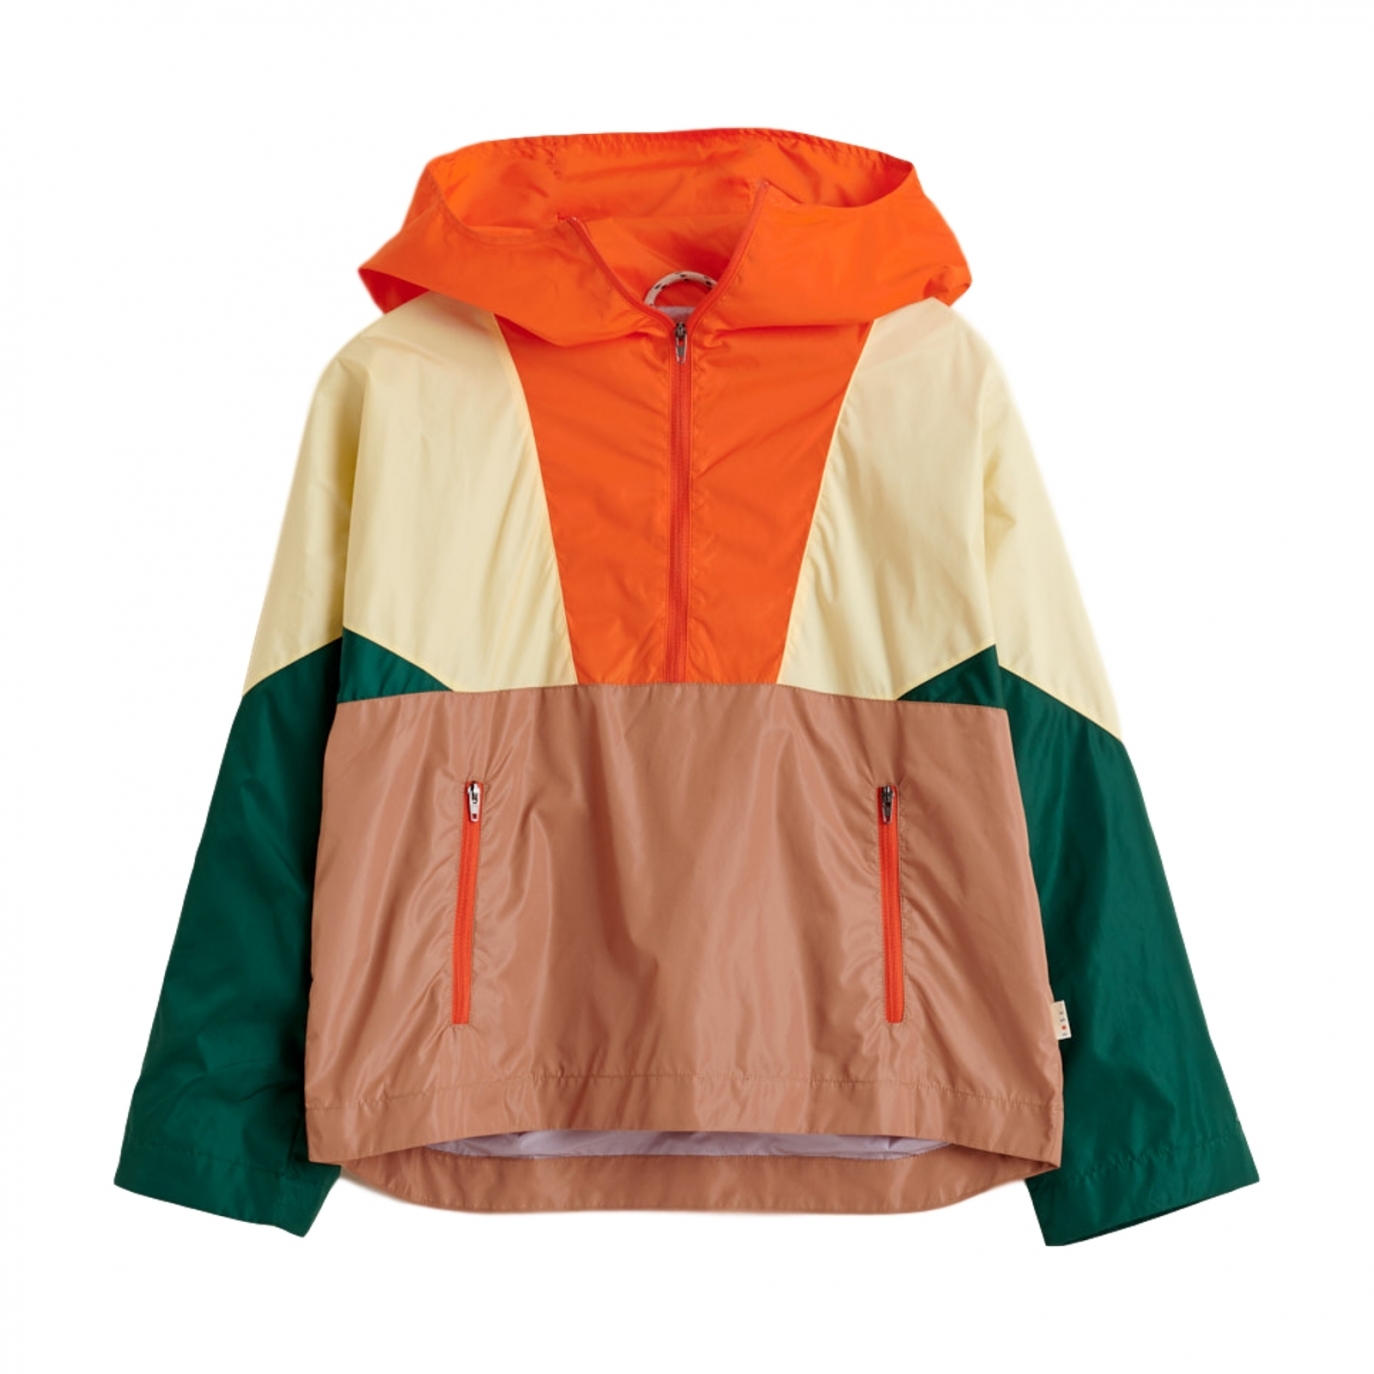 Bellerose - Hoodie Jacket Orange - Manteaux, vestes et combinaisons - BK201503 P1135 